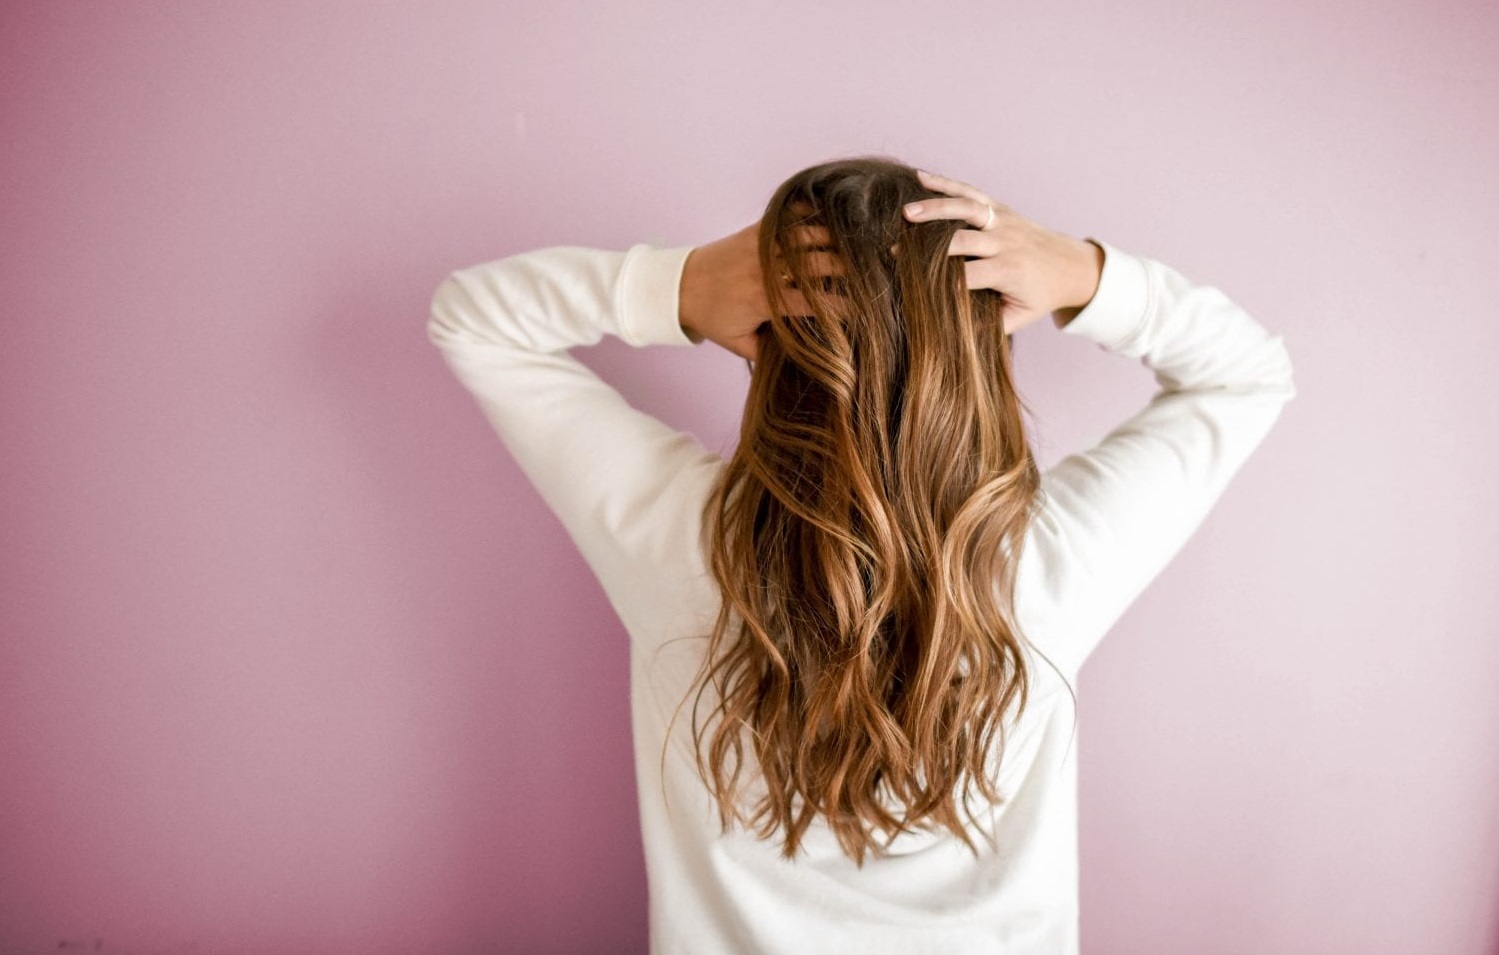 پیشگیری از سوختن مو همیشه راحت تر از درمان موهای سوخته است. قبل از استفاده از ابزارهای حالت دهنده مو، از یک اسپری محافظ حرارتی مو برای محافظت از مو در برابر آسیب استفاده کنید.